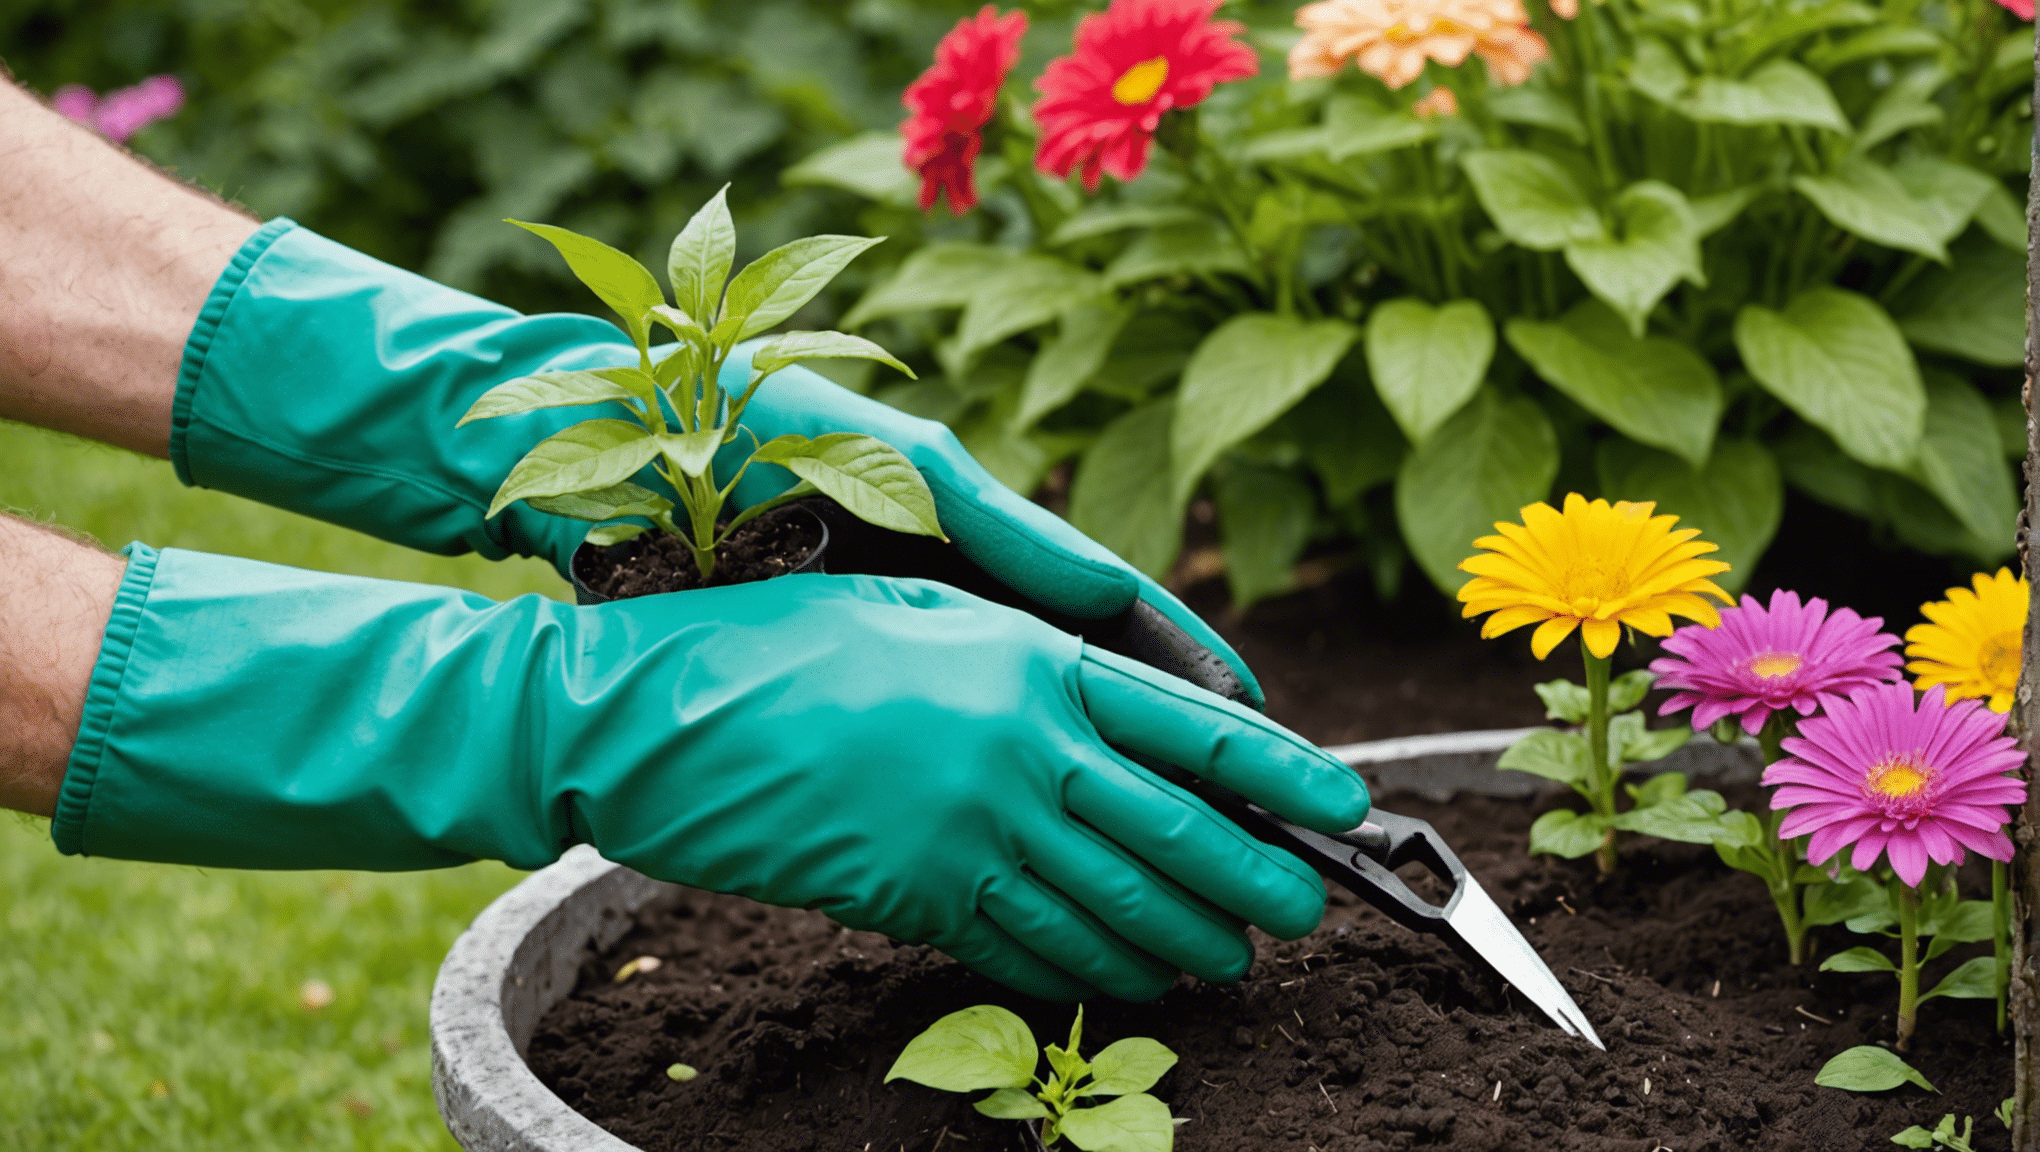 Ontdek het gemak van tuinhandschoenen met klauwen en transformeer uw tuinierervaring met gemak en efficiëntie.